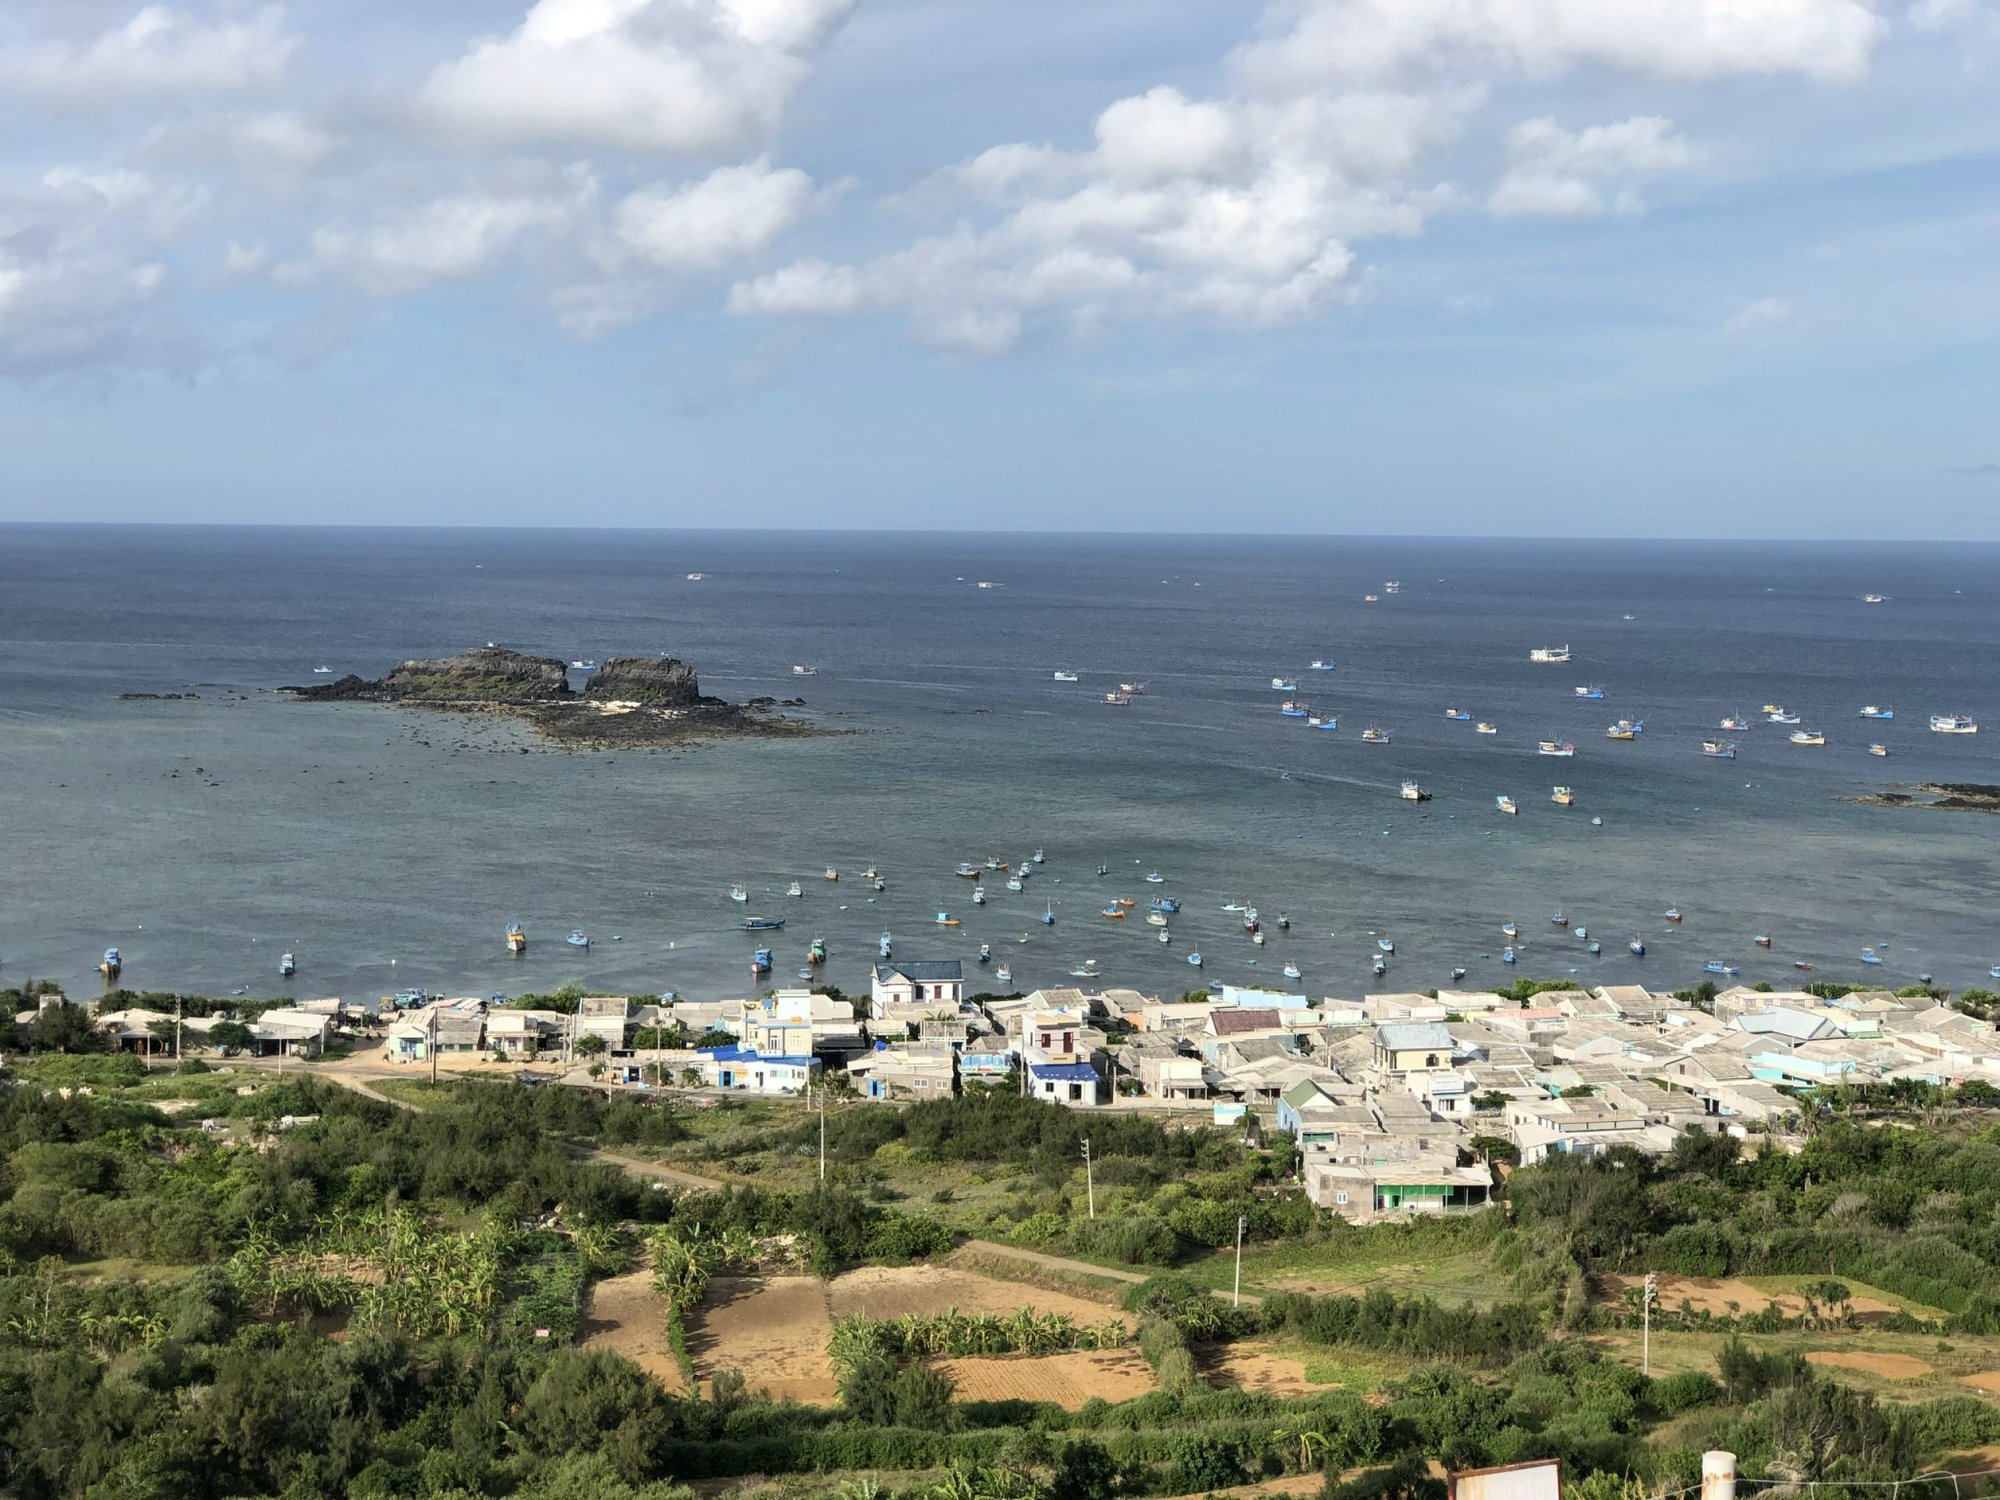 Cuộc sống đổi thay trên “hòn ngọc” giữa biển khơi khiến du khách đến đảo Phú Quý một lần nhớ cả đời - Ảnh 1.